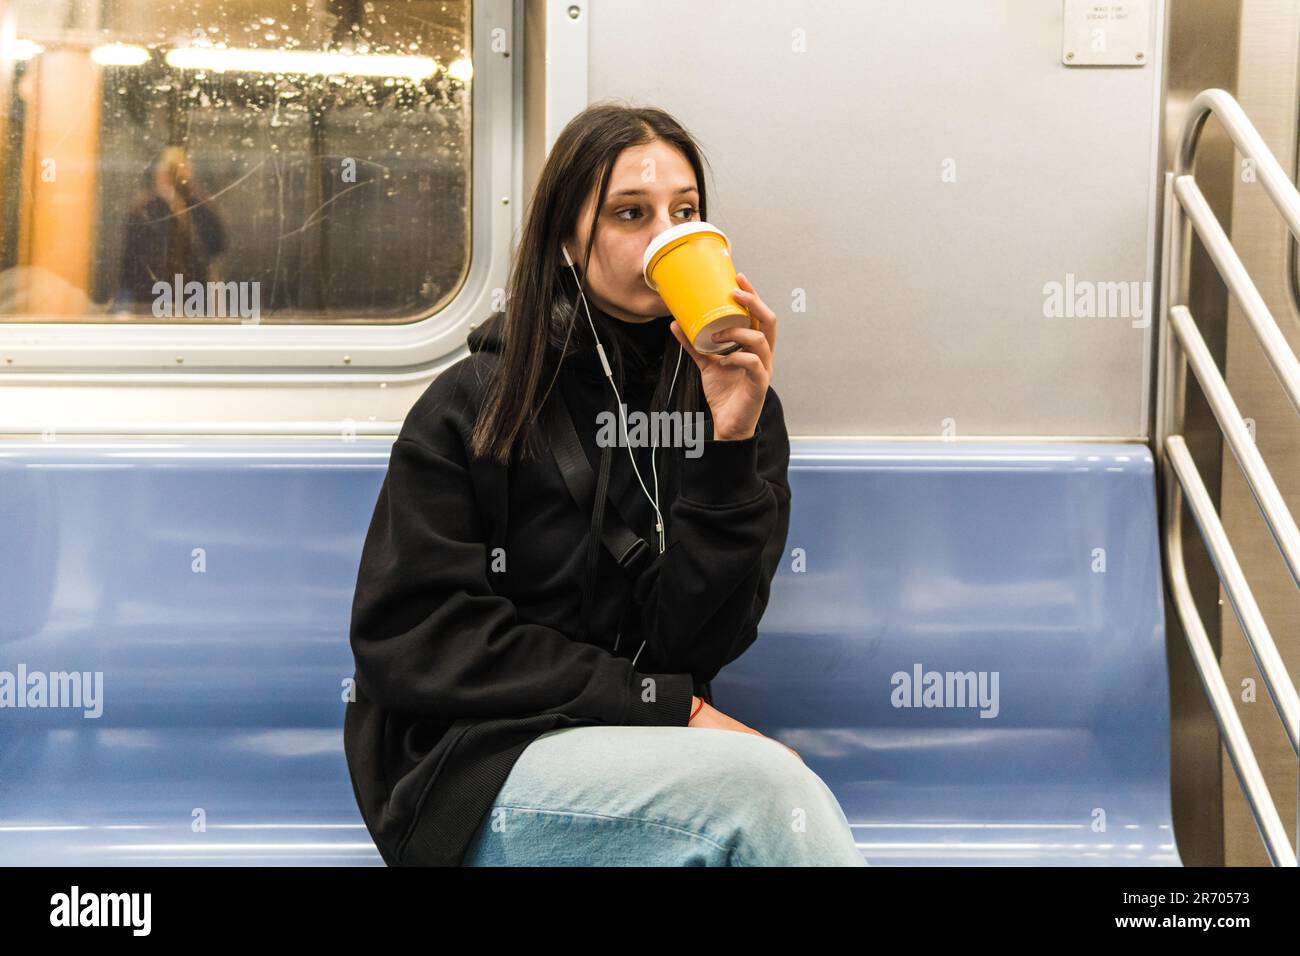 une jeune femme boit du café dans le métro Banque D'Images